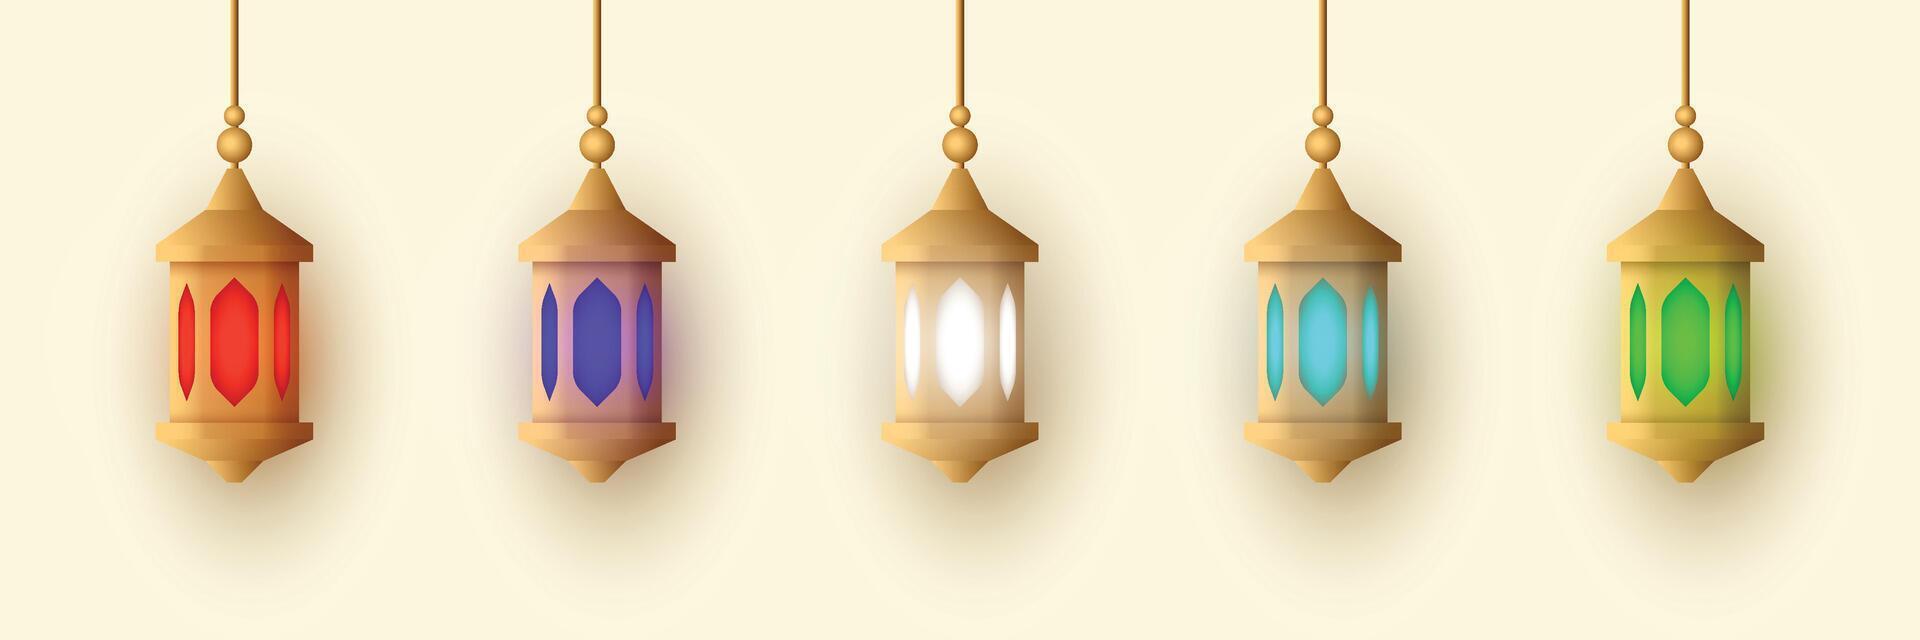 réaliste lanterne ornement vecteur ensemble collection conception